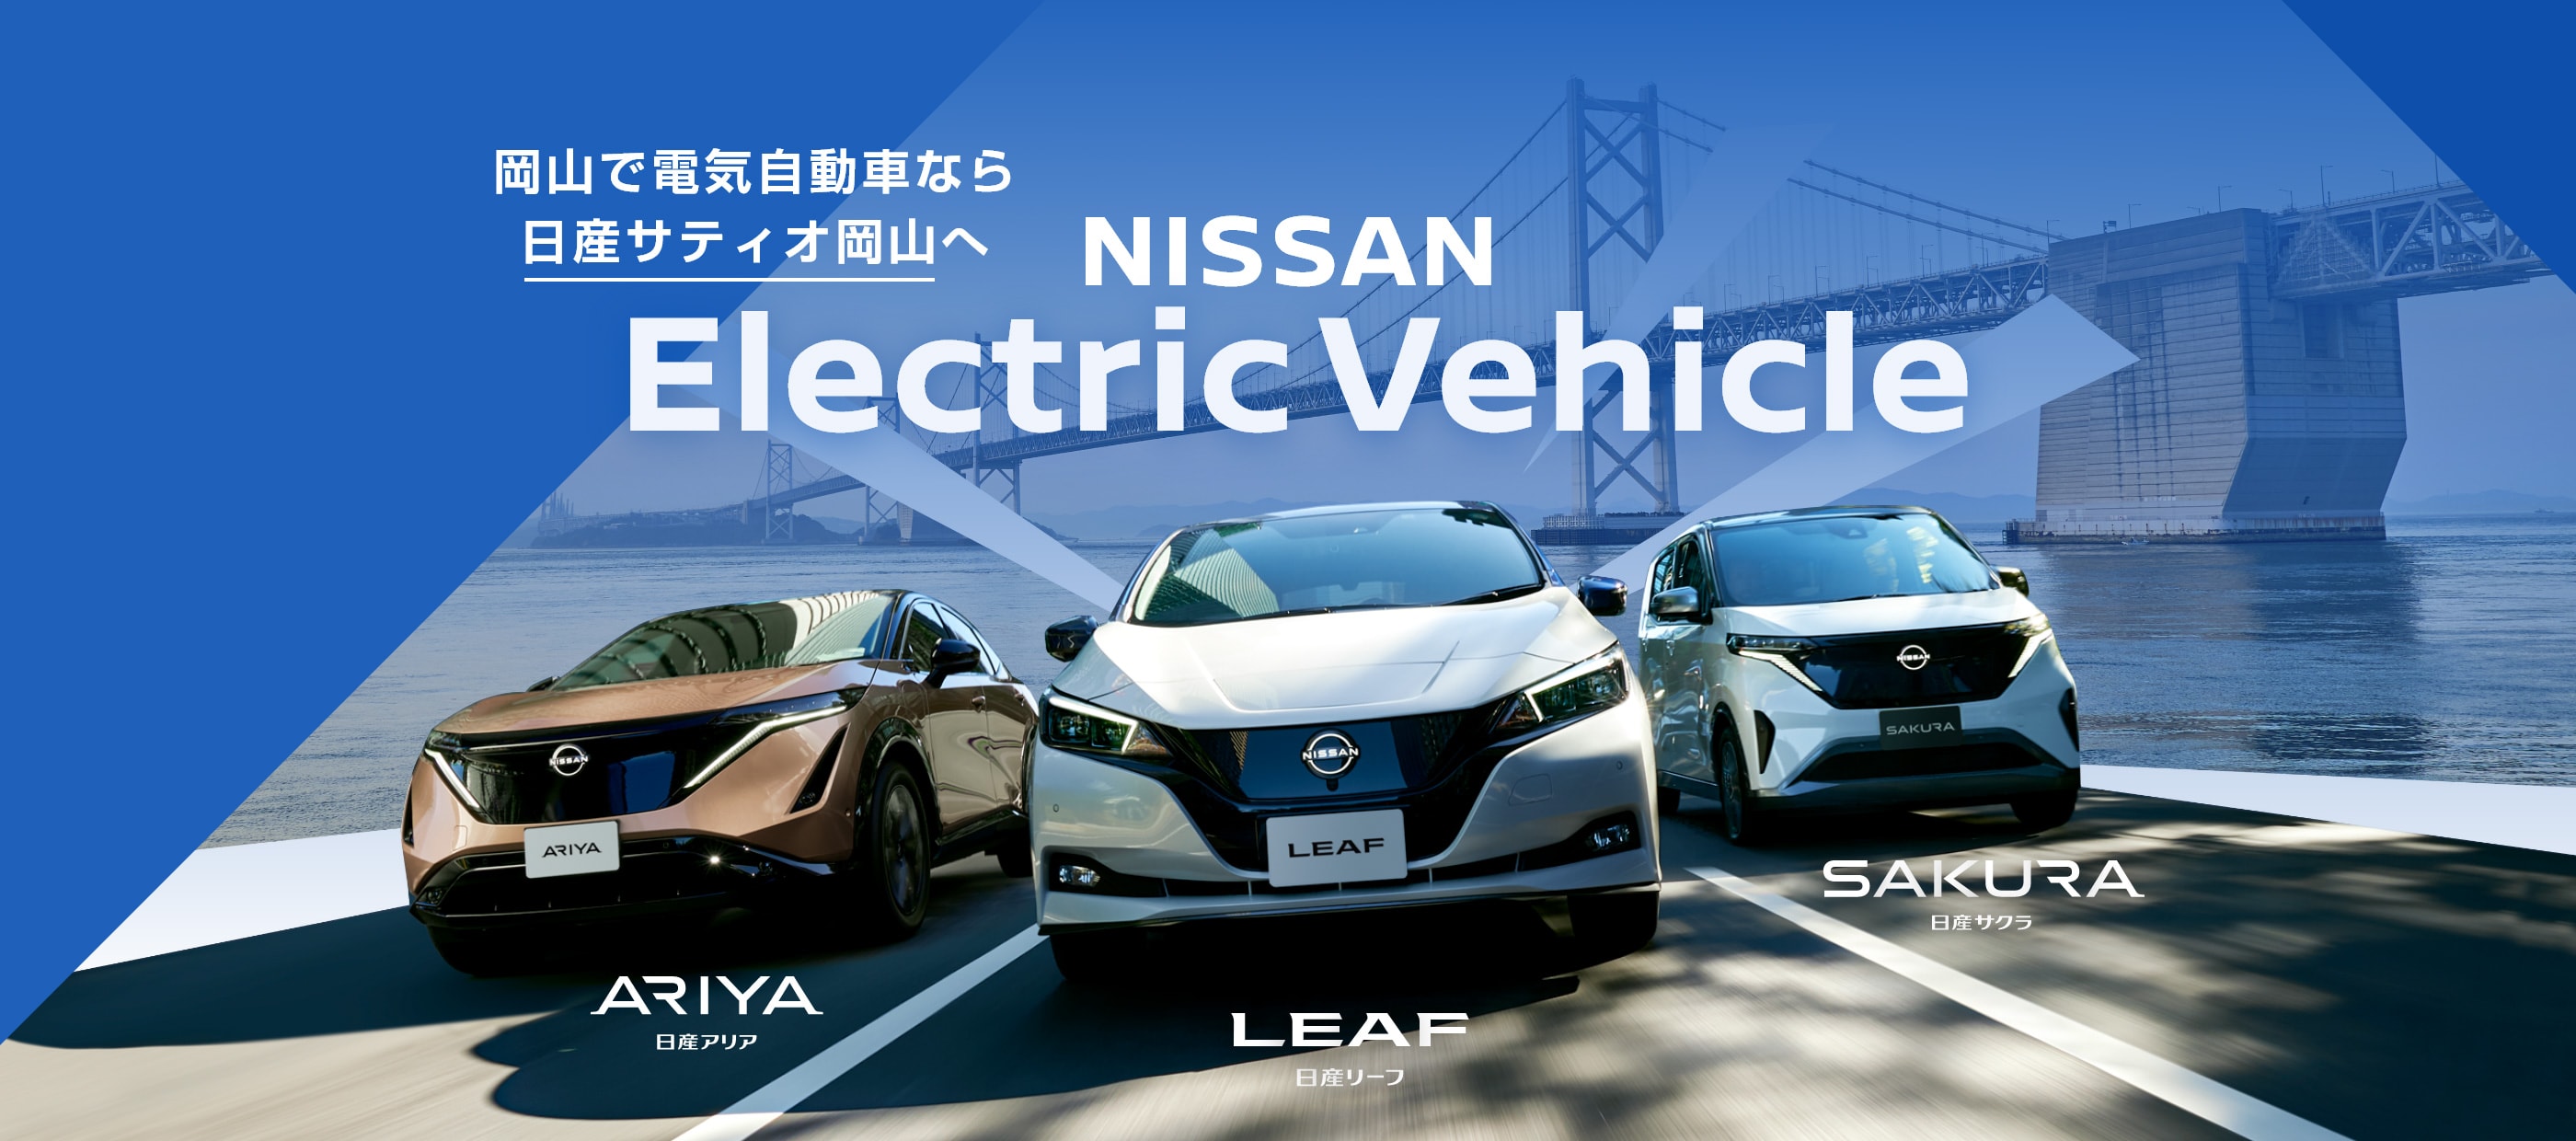 岡山で電気自動車なら日産サティオ岡山へ NISSAN Electric Vehicle